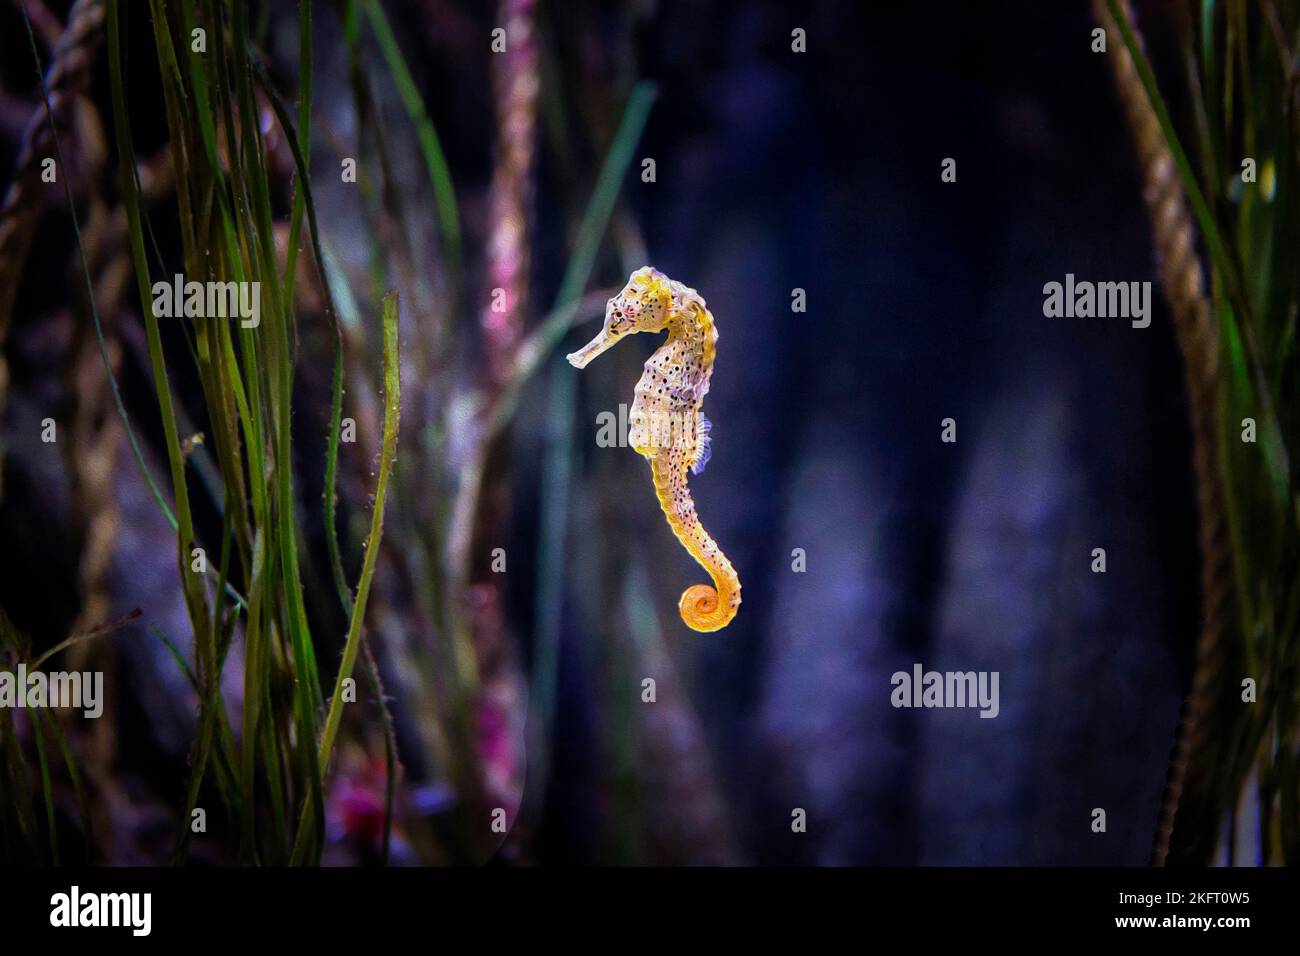 Cavalluccio marino a lungo snouted (Hippocampus reidi) nuoto in un acquario, illustrazione, Sea-Life Hannover, bassa Sassonia, Germania, Europa Foto Stock